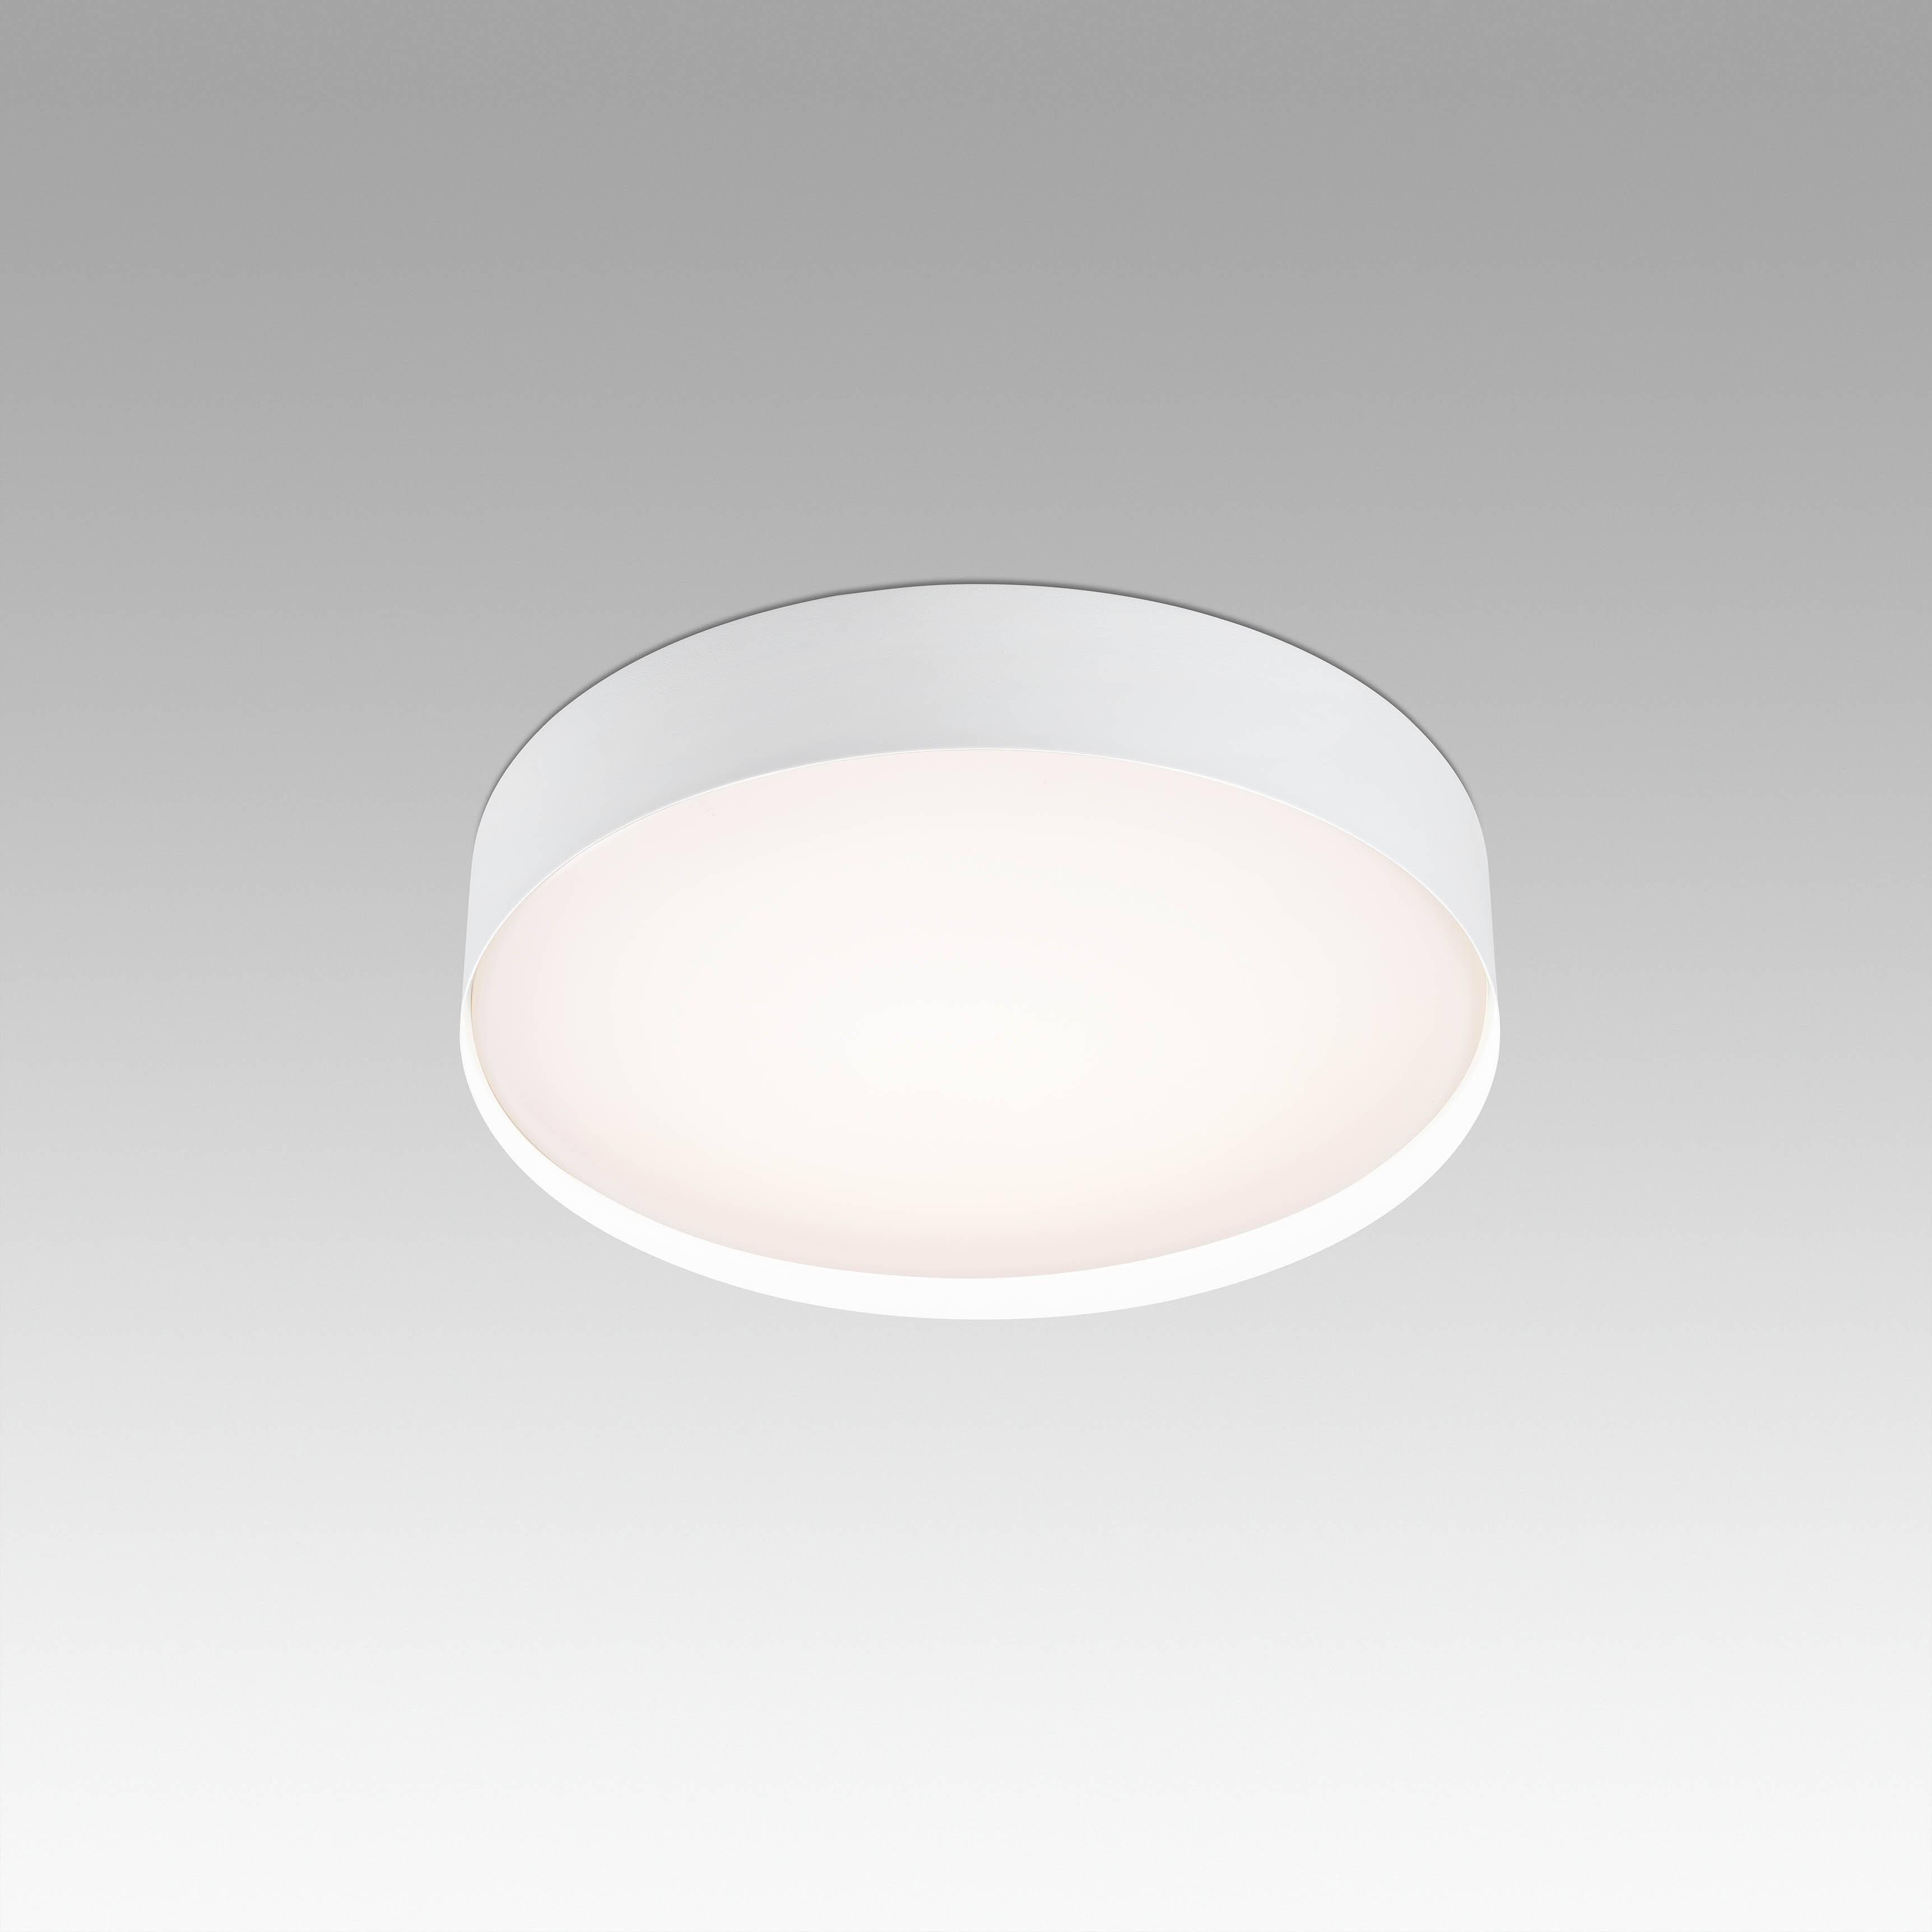 Vuk LED Round Bathroom Flush Ceiling Light White IP44